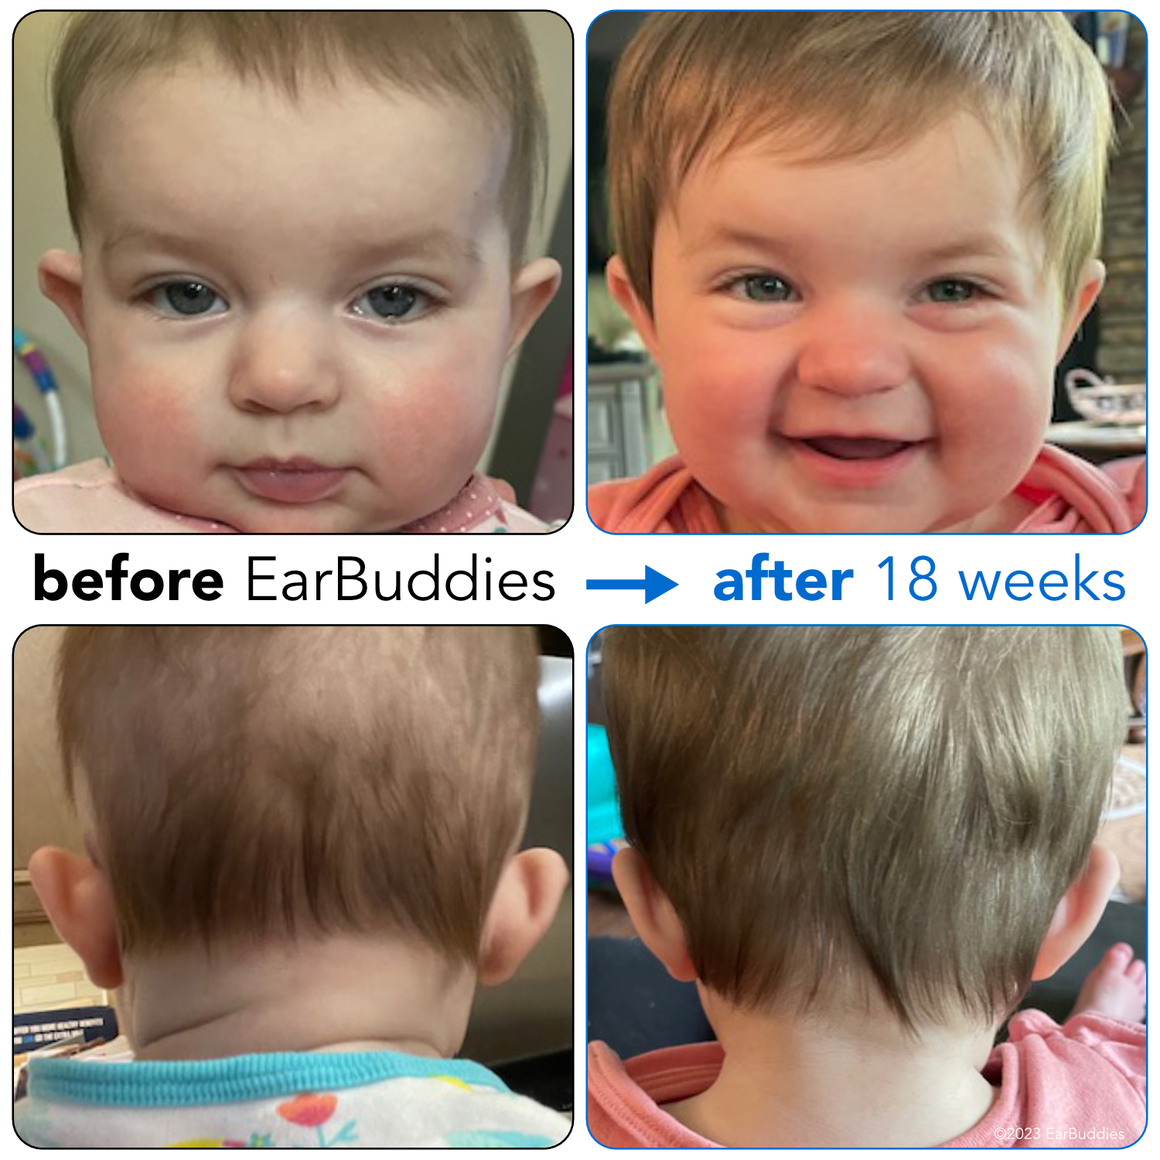 EarBuddies® Splints Correct Baby Ear Deformities like Stick Out Ears